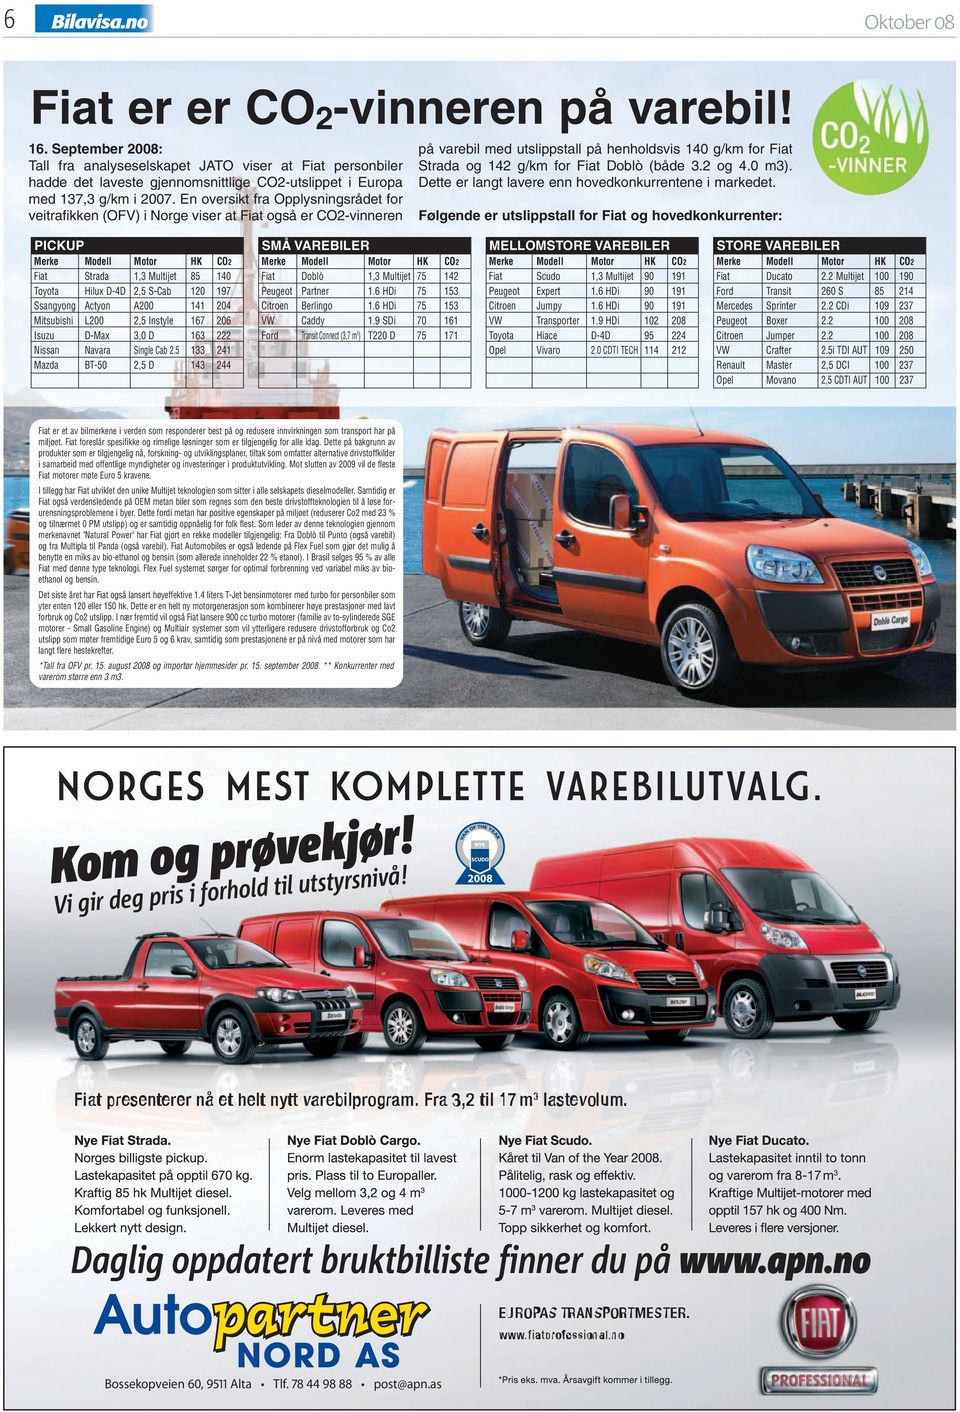 En oversikt fra Opplysningsrådet for veitrafikken (OFV) i Norge viser at Fiat også er CO2-vinneren på varebil med utslippstall på henholdsvis 140 g/km for Fiat Strada og 142 g/km for Fiat Doblò (både